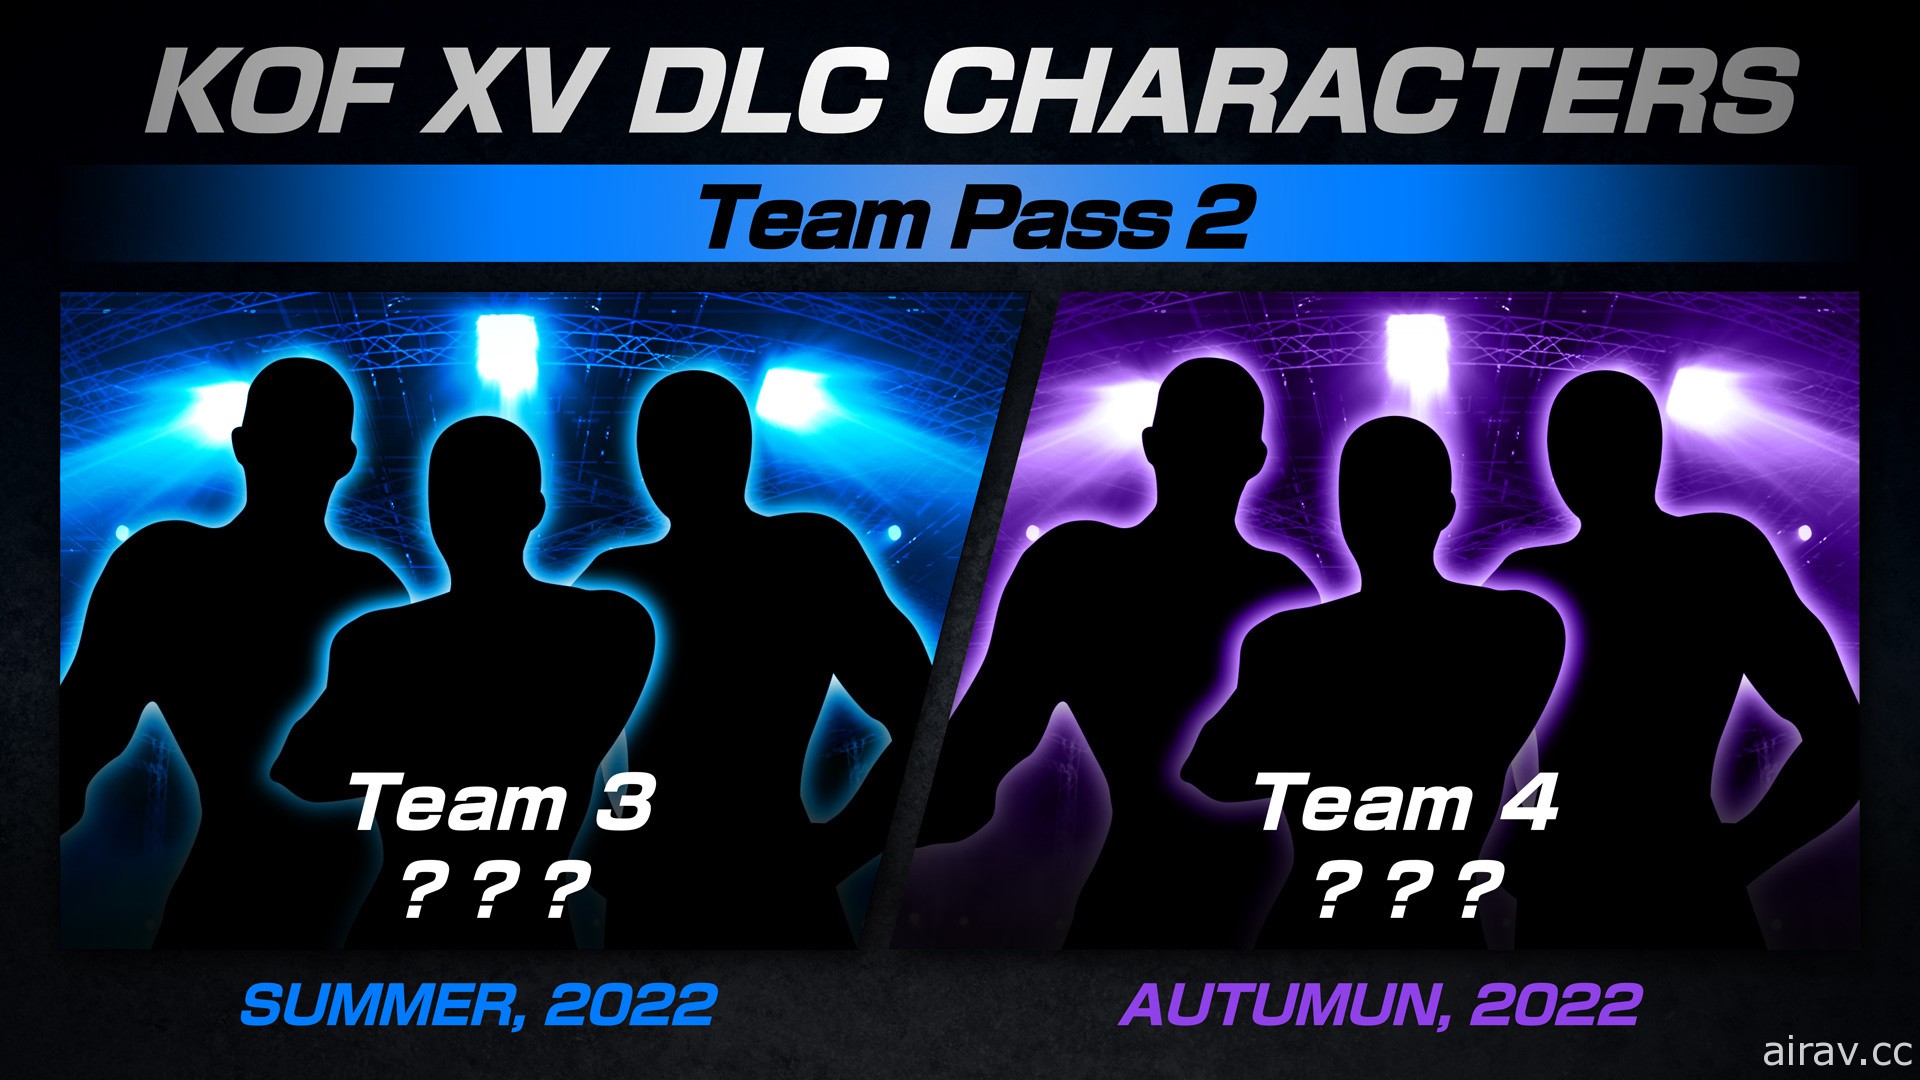 《拳皇 XV》DLC 参战阵容将由“饿狼狼之印记队”及“南镇队”打头阵